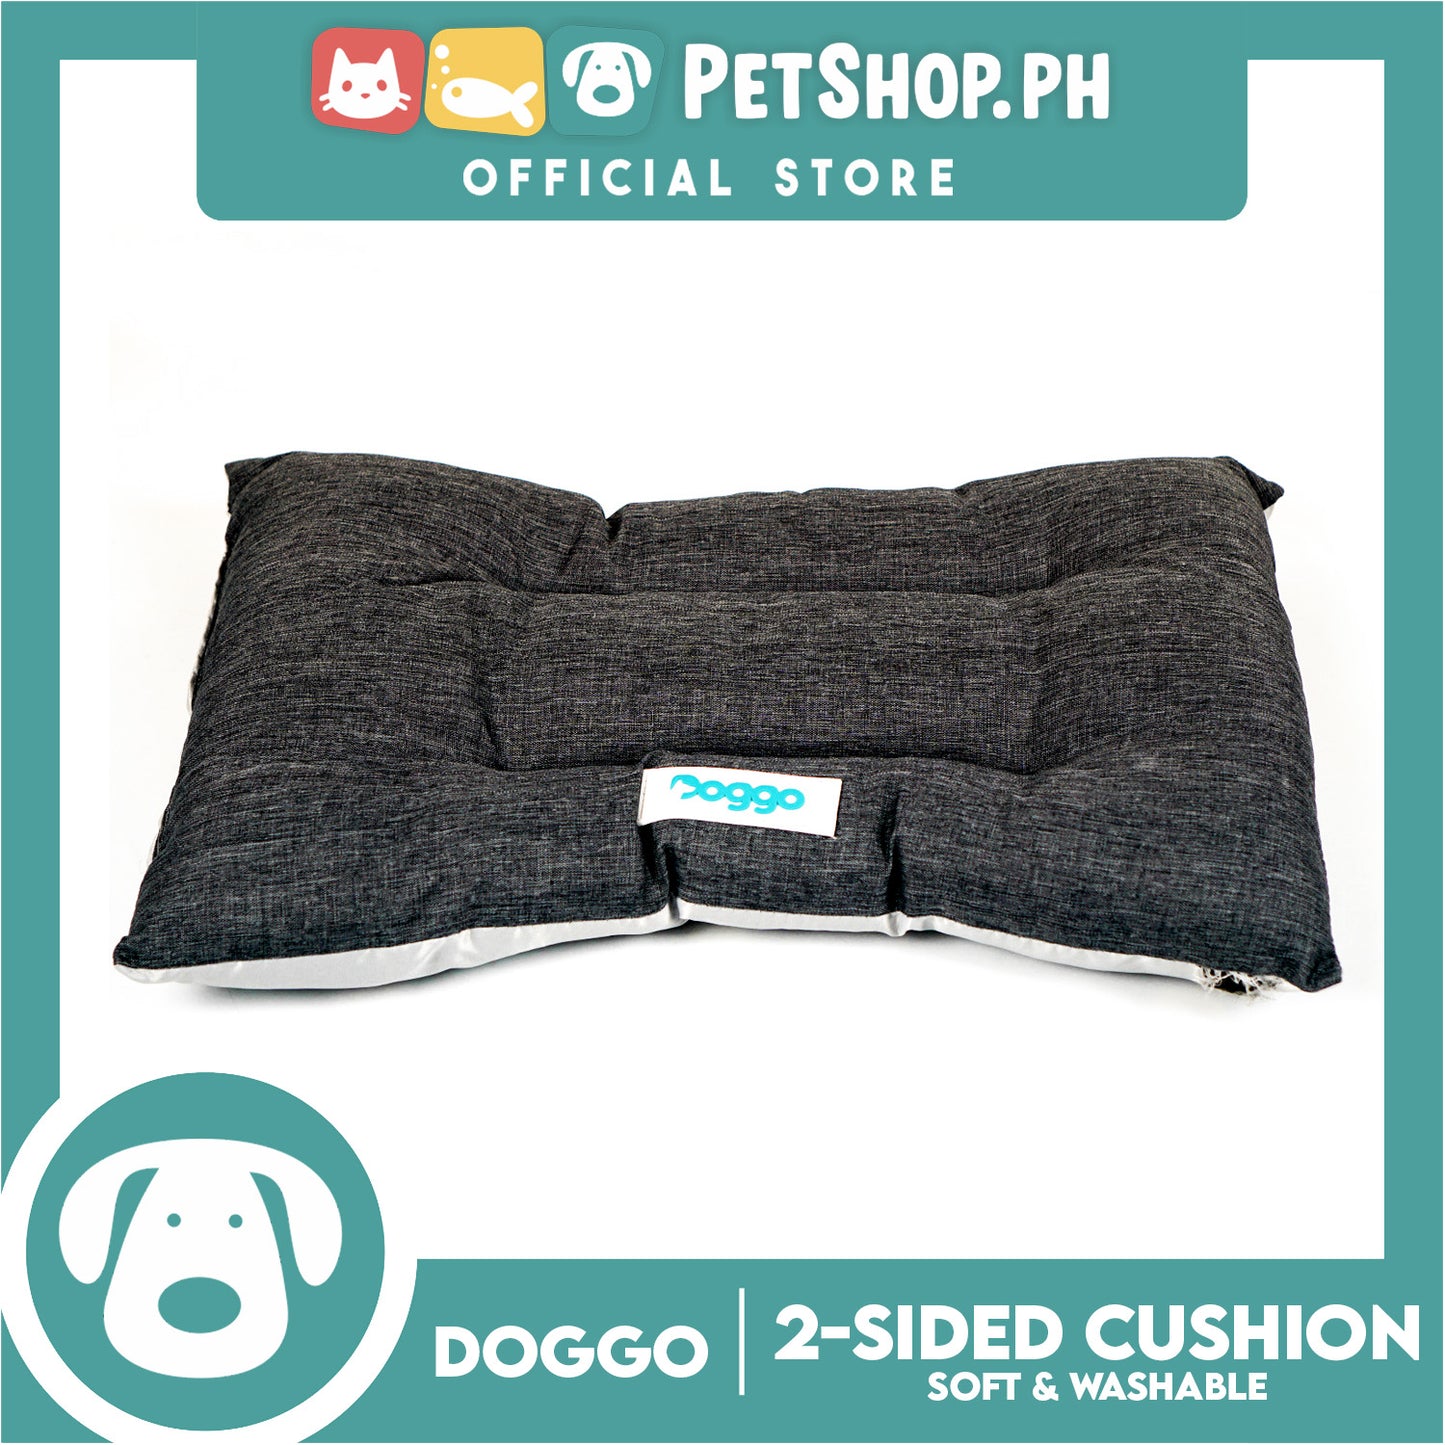 Doggo 2-Sided Cushion Bed (Medium) Dog Bed Sleeping Calming Bed